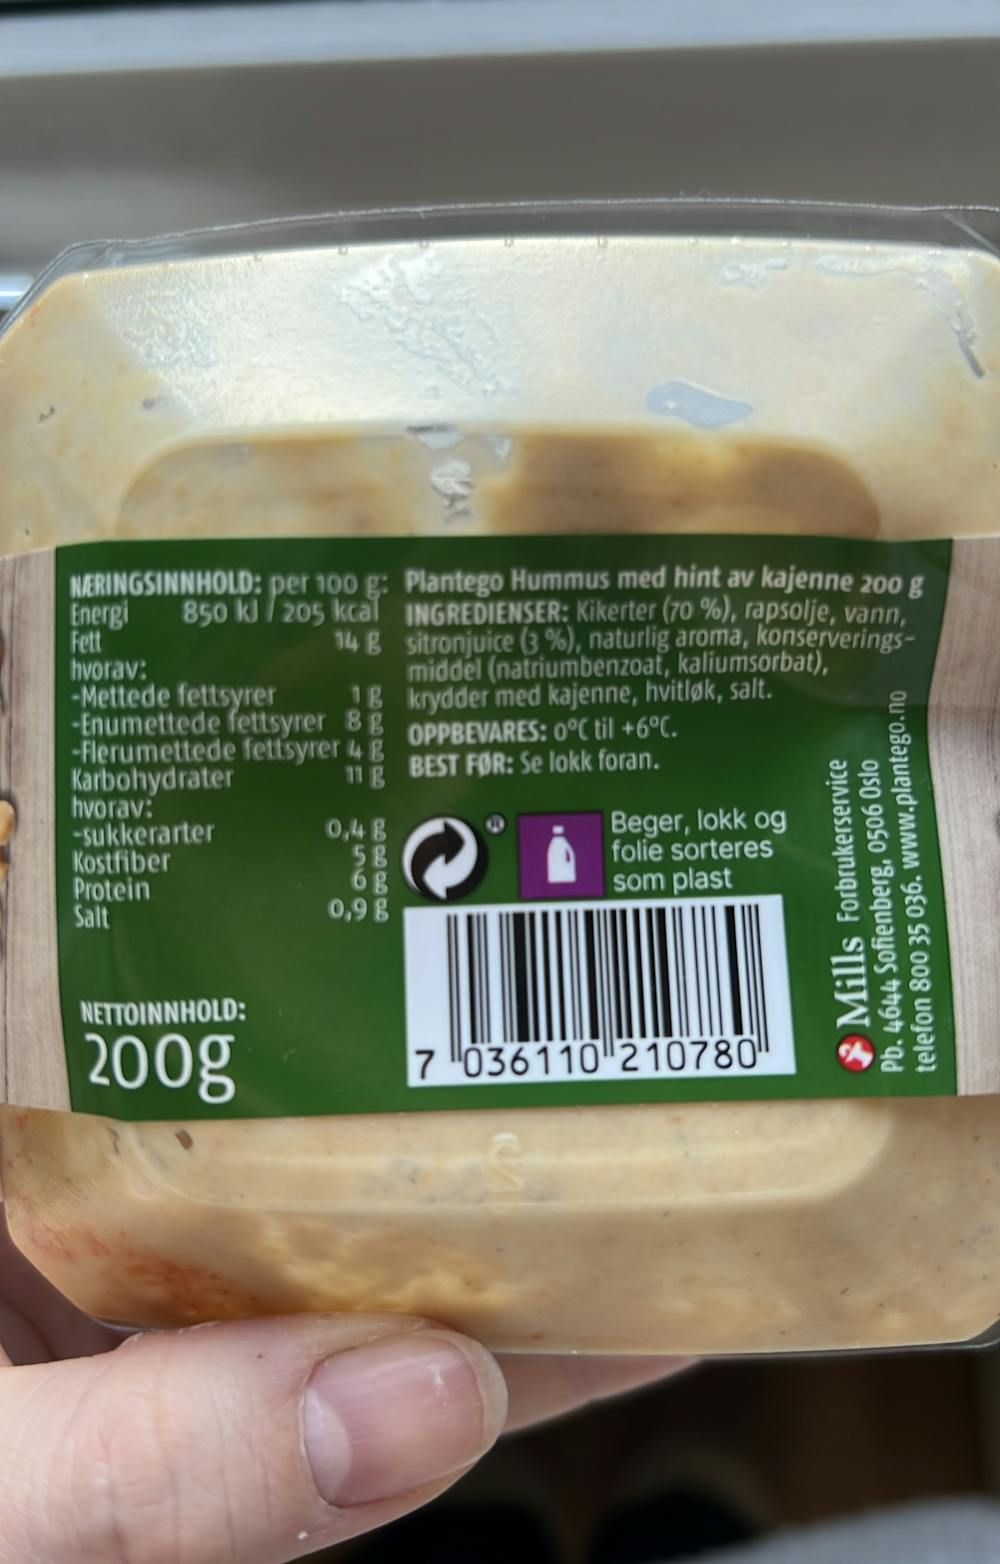 Ingredienslisten til Hummus med hint av kajenne, Plantego’